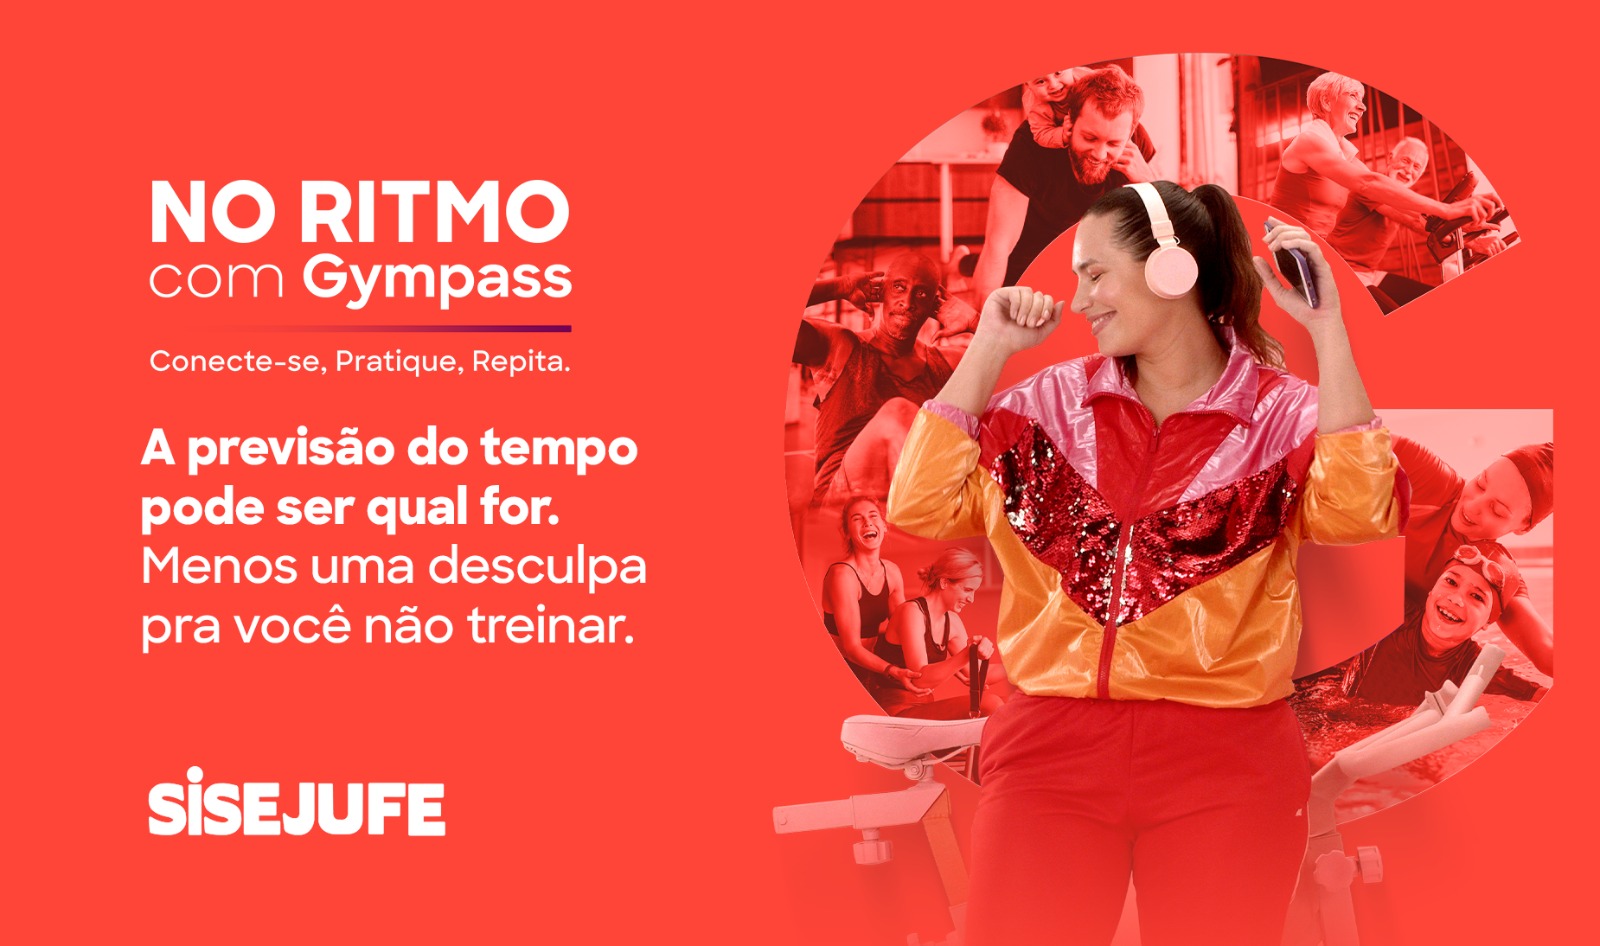 Gympass lança campanha 'Jogue com elas', no clima da Copa do Mundo feminina  - SISEJUFE